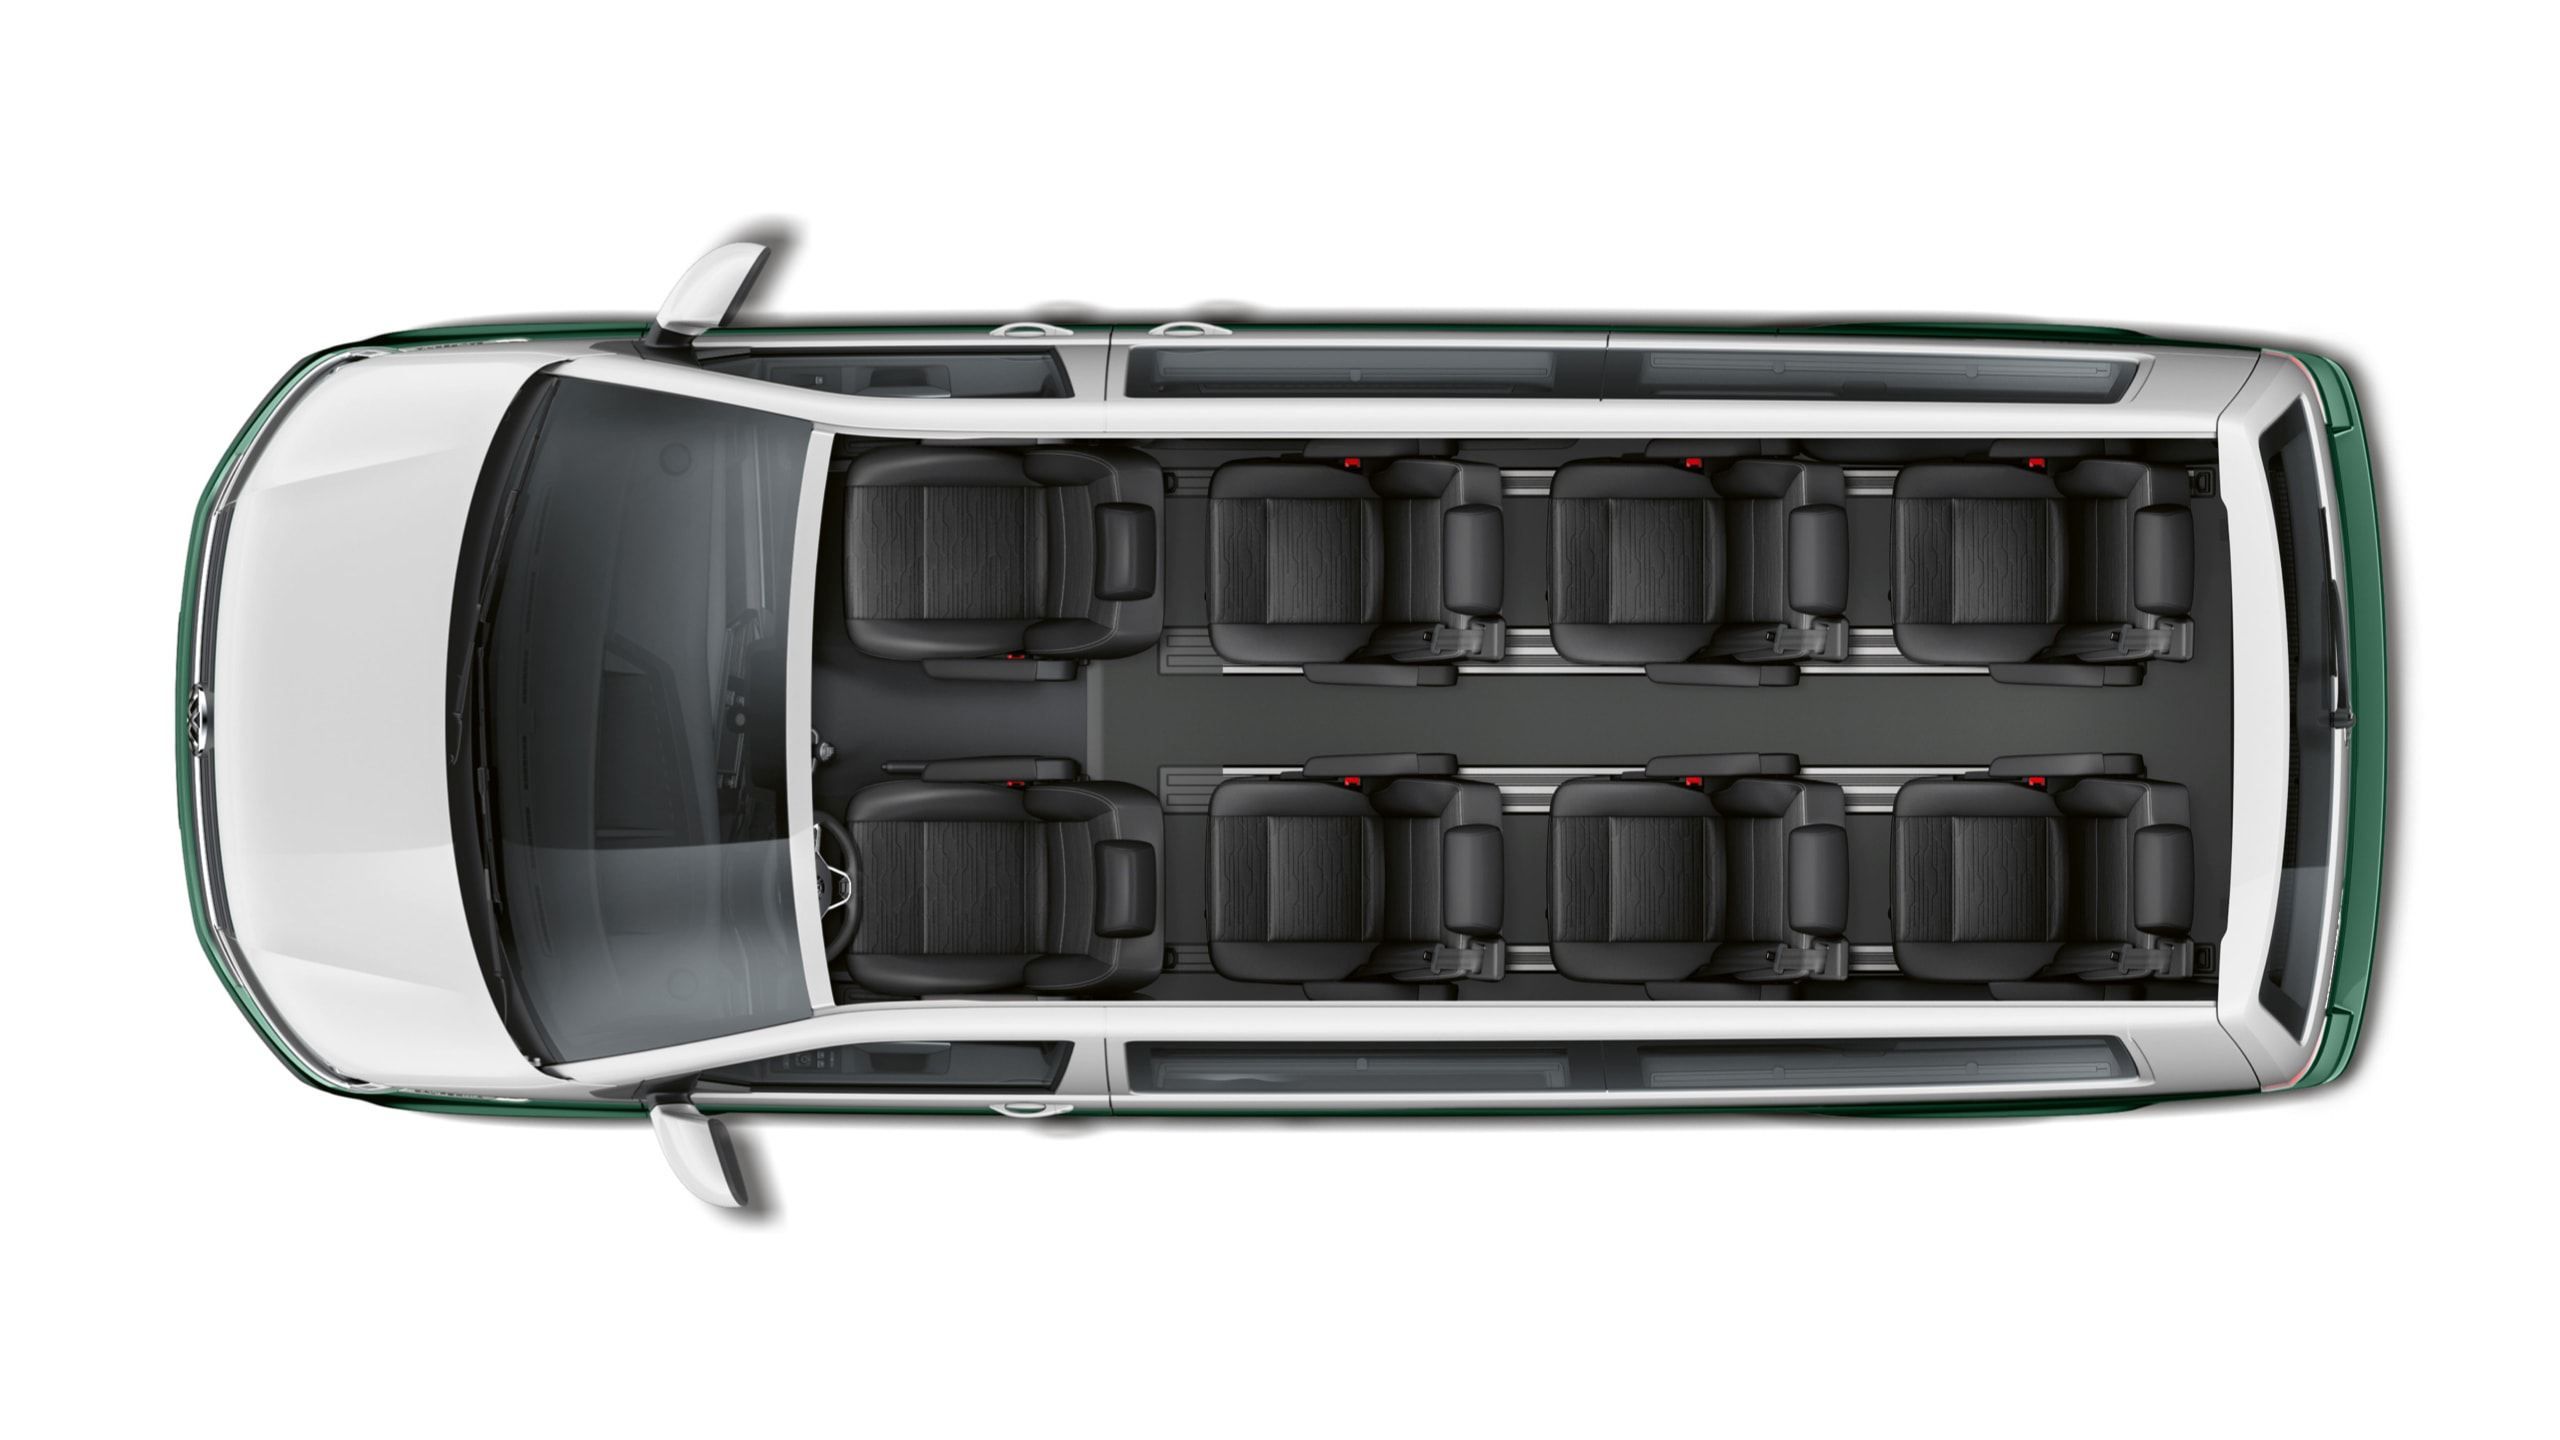 Аренда  Volkswagen Caravelle T6.1 Trendline 8+1 Long  7 класса 2021 года в городе Минск от 92 $/сутки,  двигатель: ДТ , объем 2.0 TDI литров, КАСКО (Мультидрайв), без водителя, вид 6 - West Group